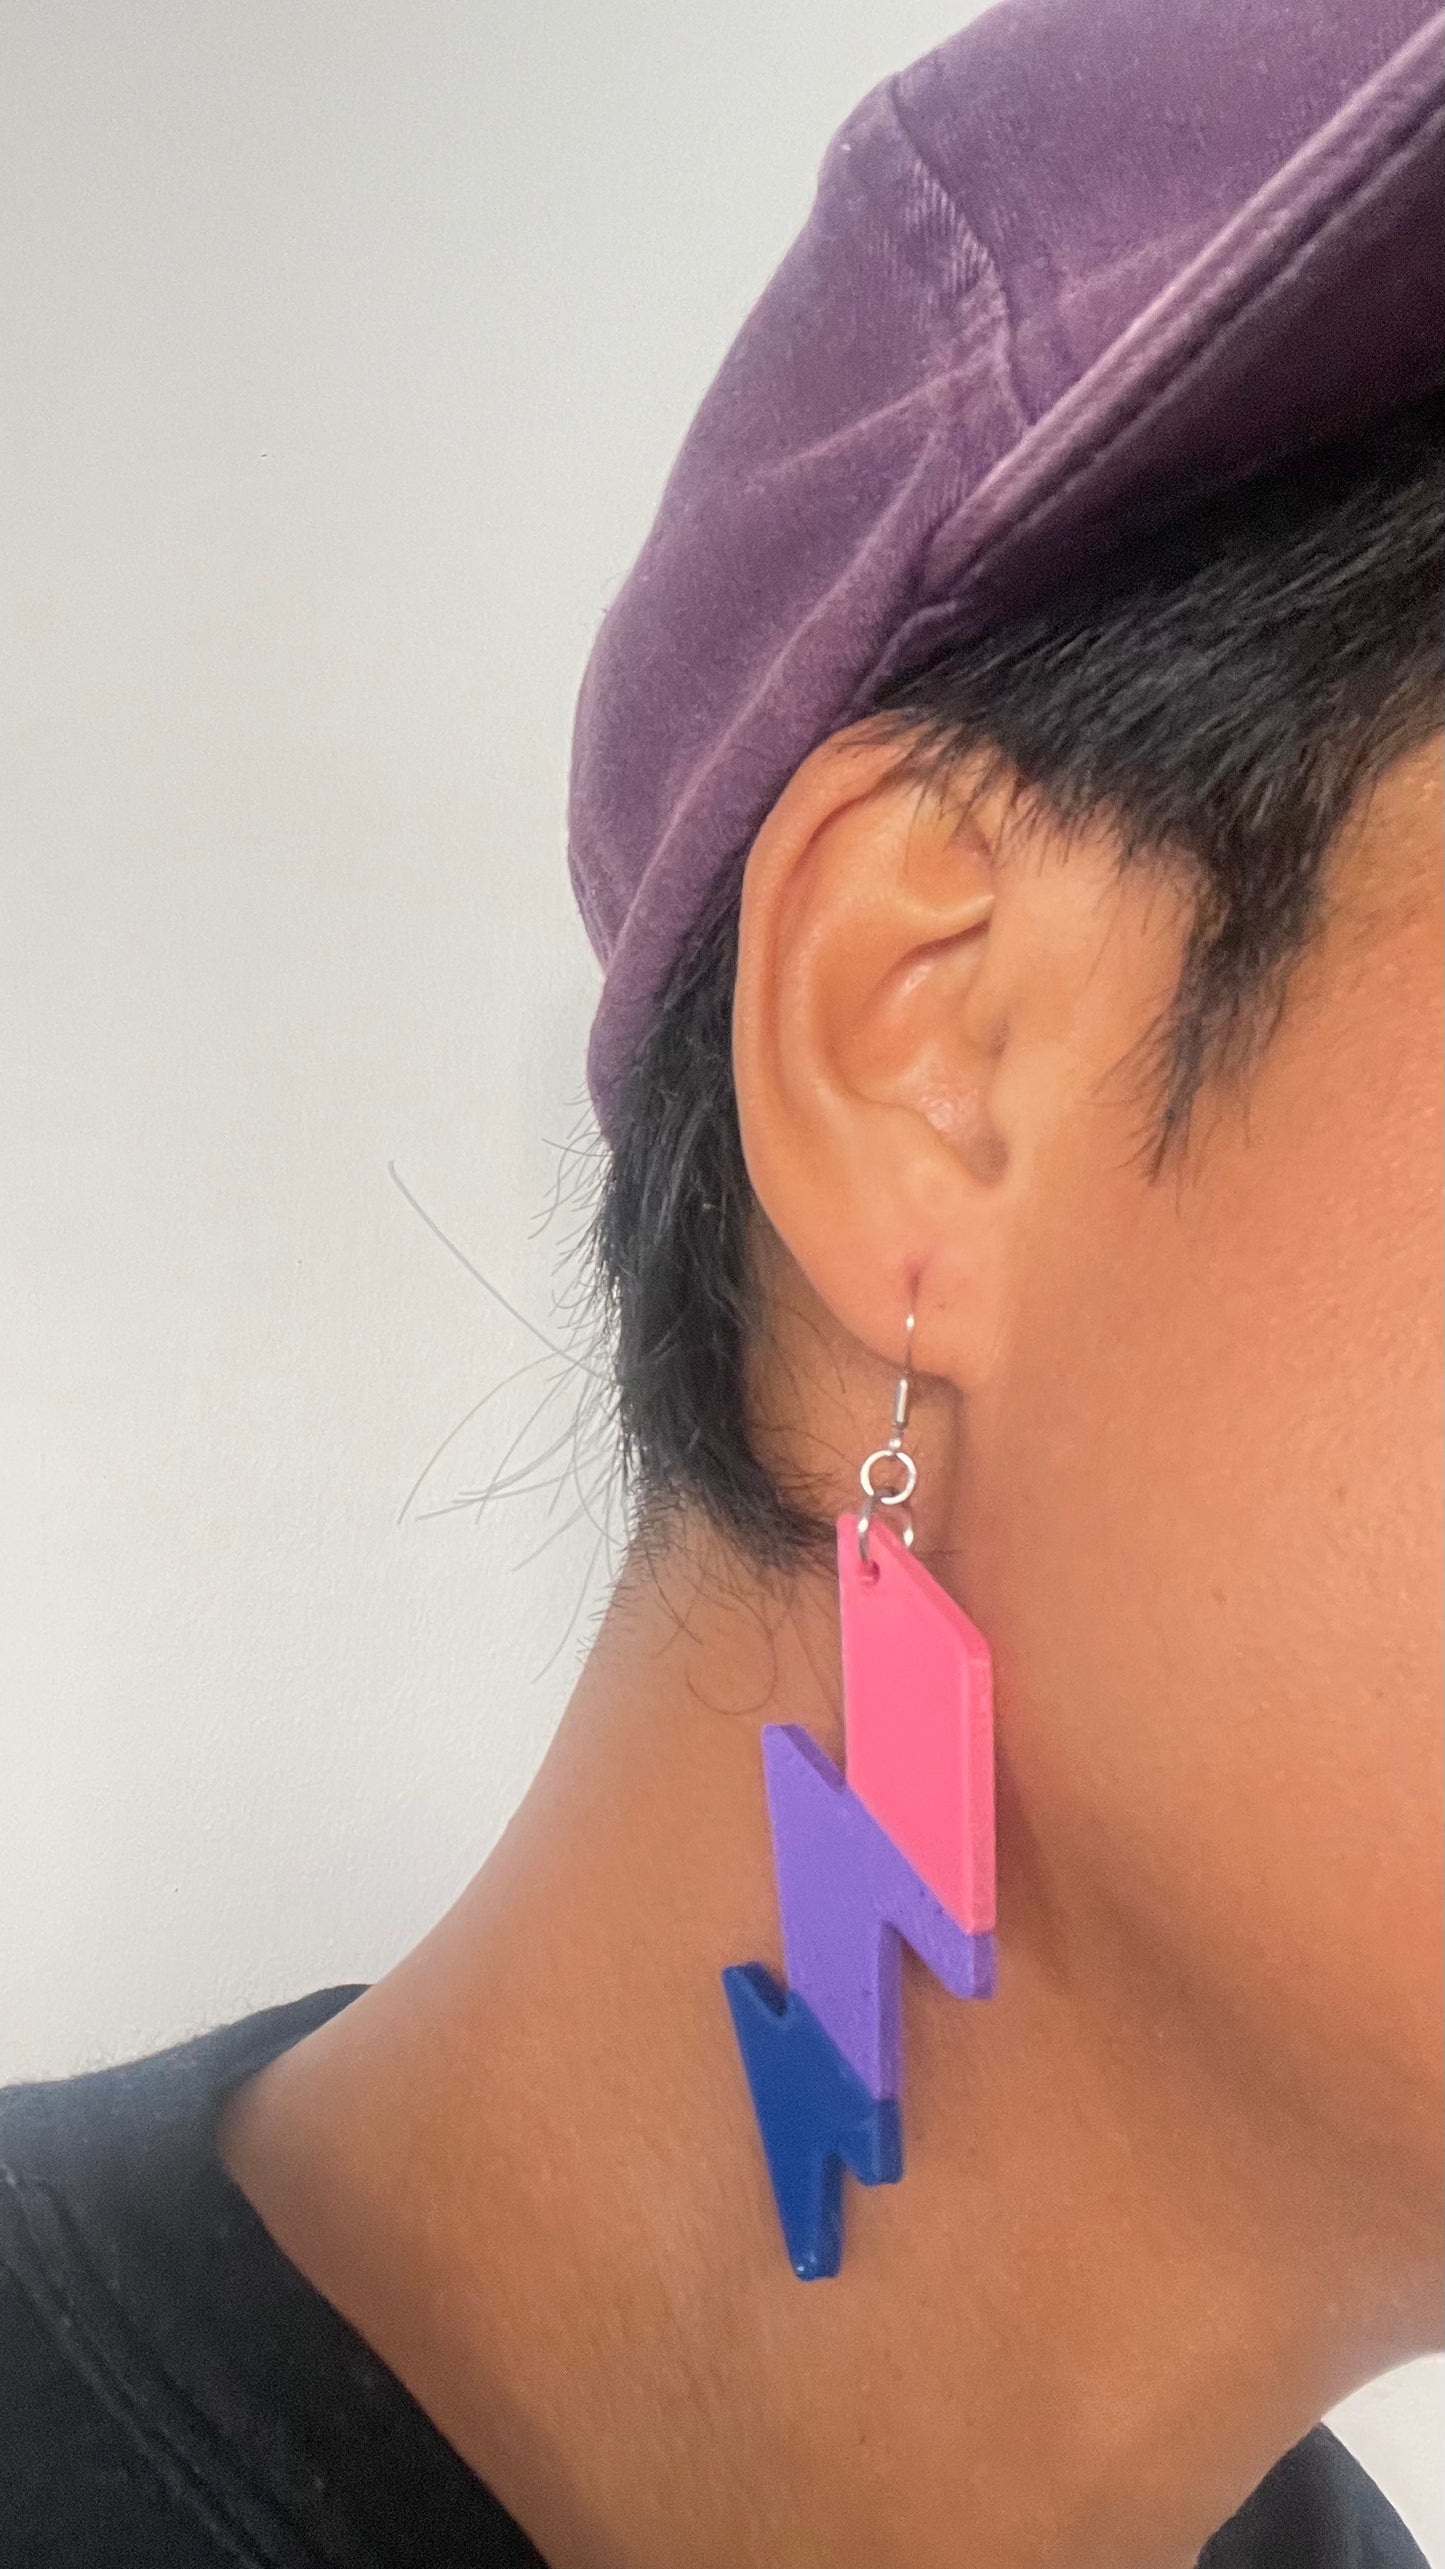 Bisexual Lightning 3D Drop Earrings